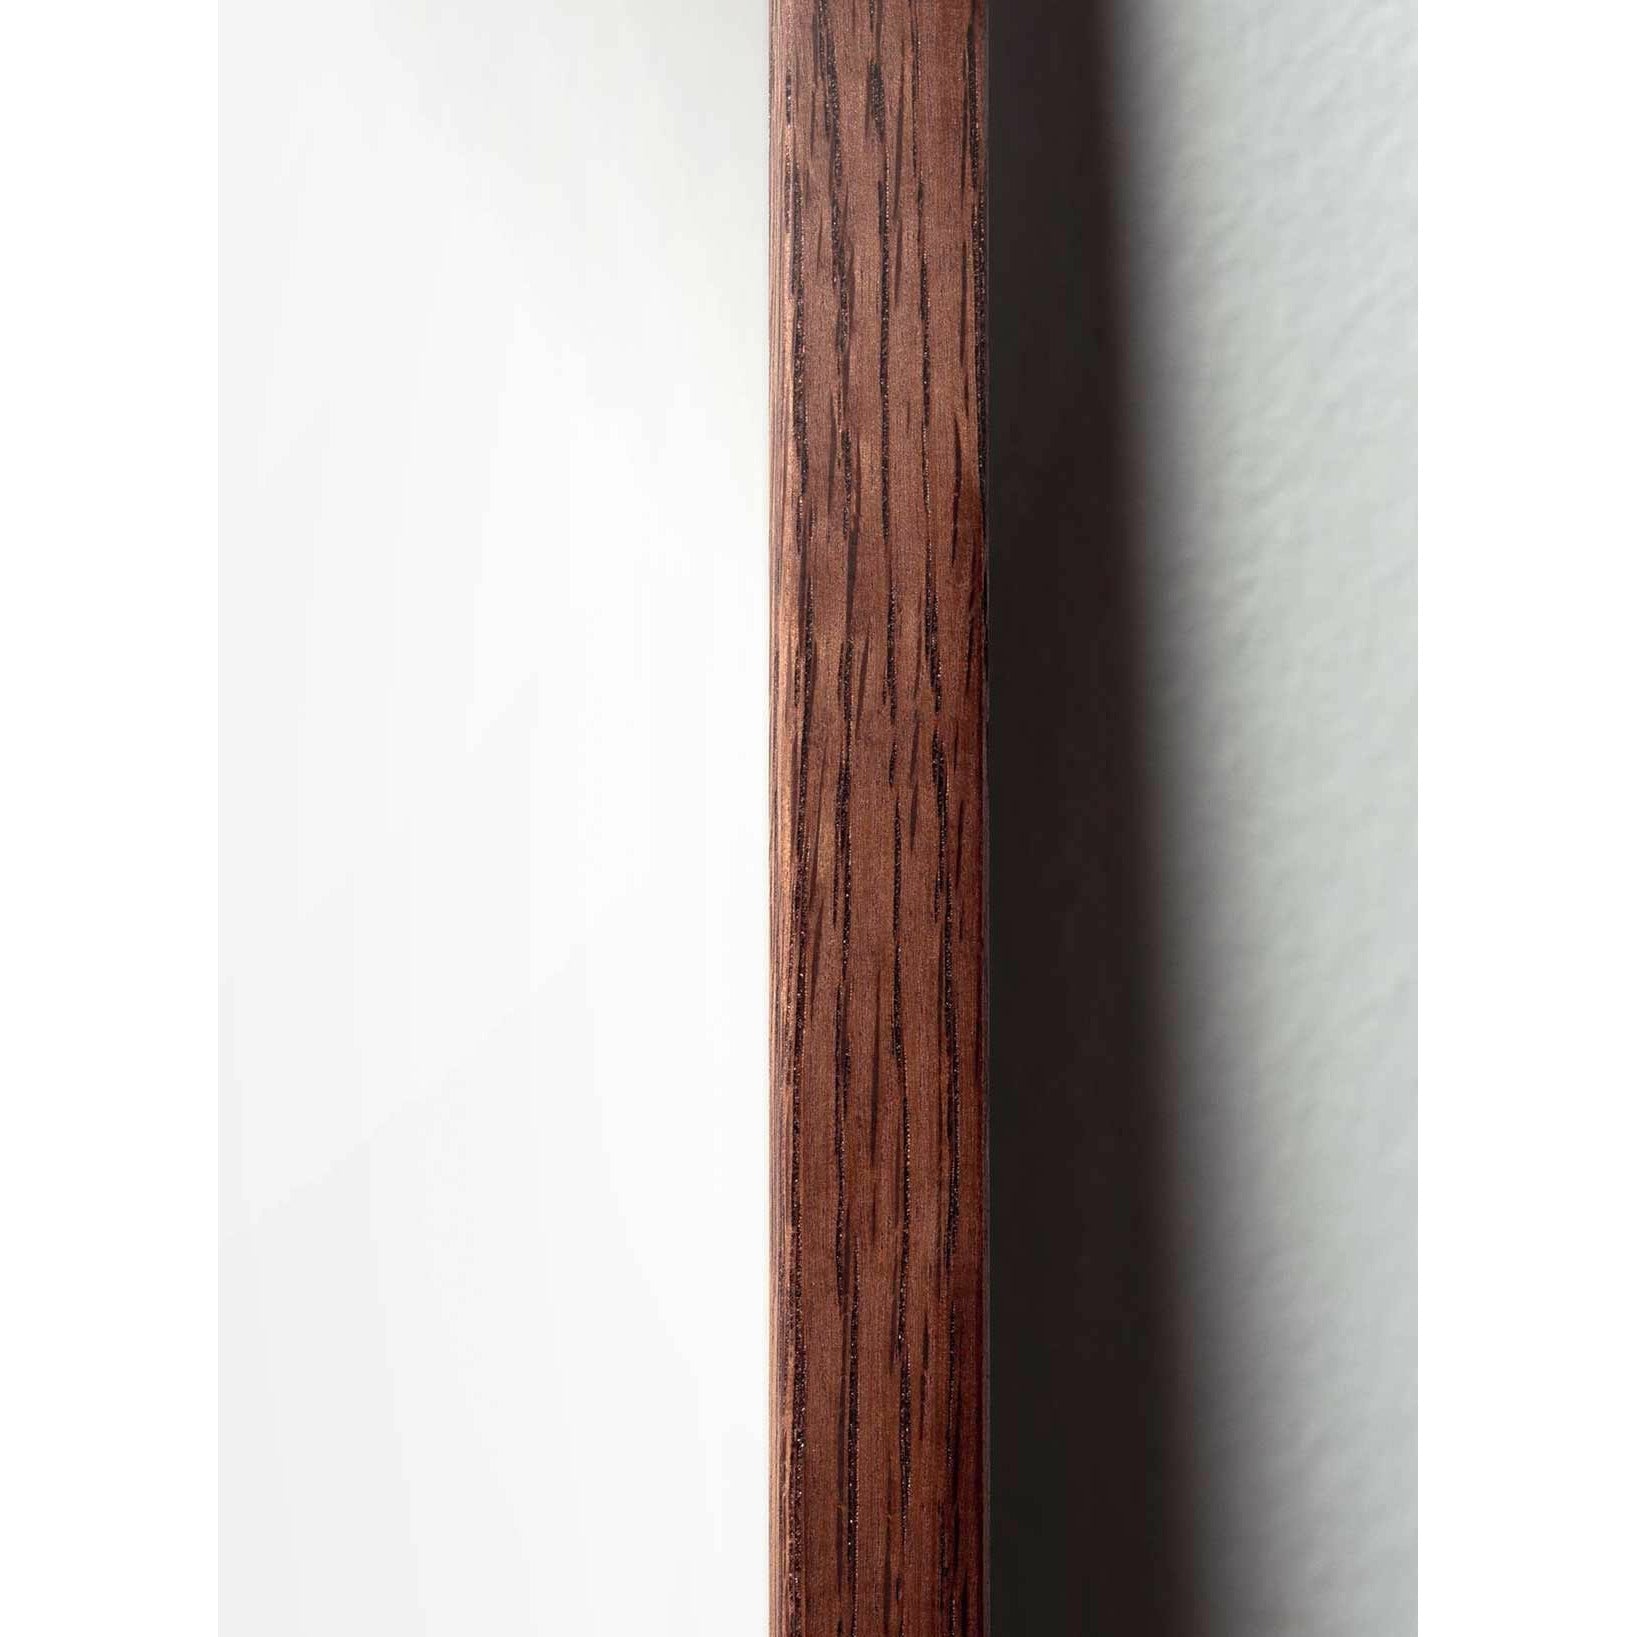 Póster de la línea de osito de peluche de creación, marco hecho de madera oscura A5, fondo azul